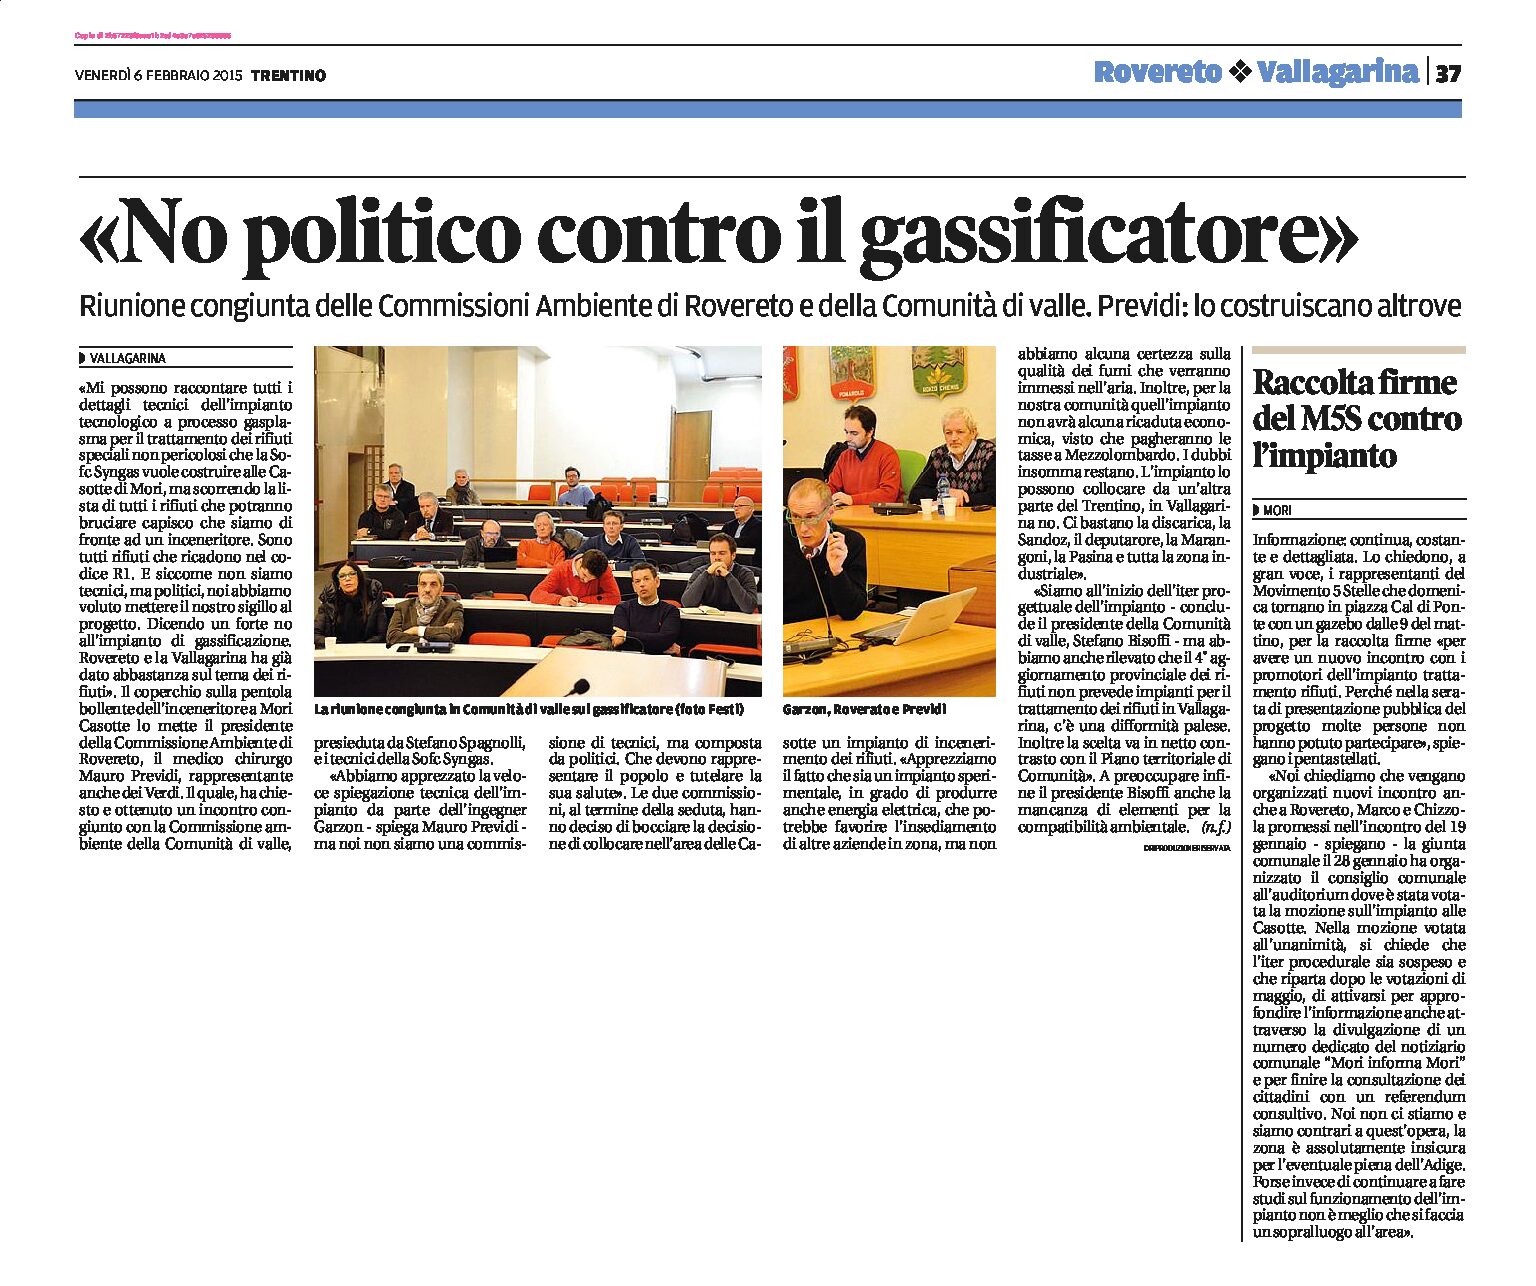 Mori, Casotte: no politico contro il gassificatore. Lo costruiscano altrove